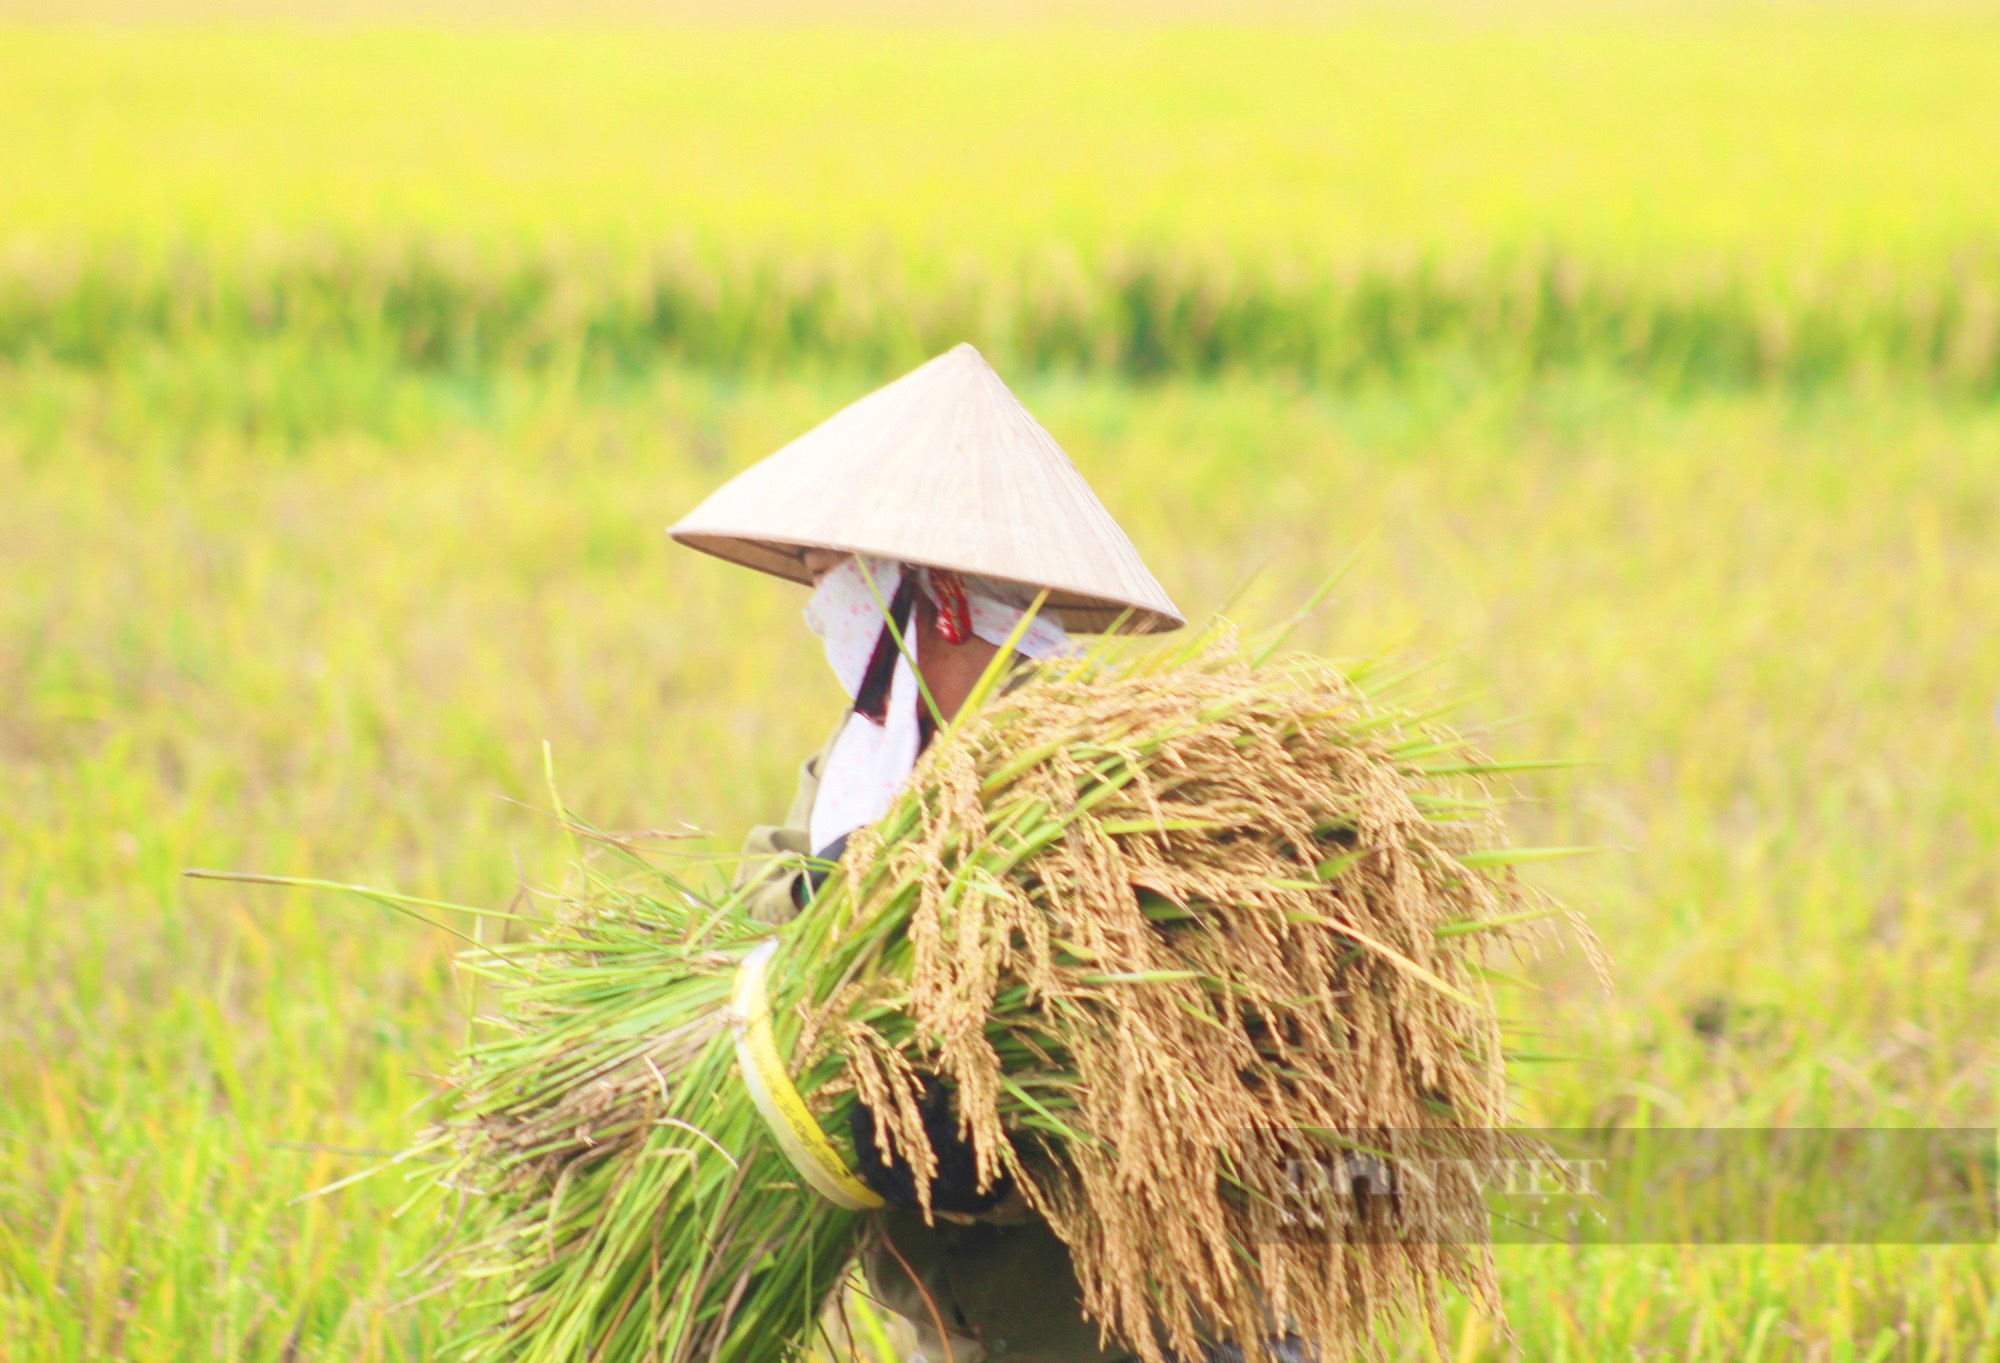 Quảng Bình: Nông dân hối hả ra đồng gặt lúa giữa cái nắng hơn 40 độ C - Ảnh 1.